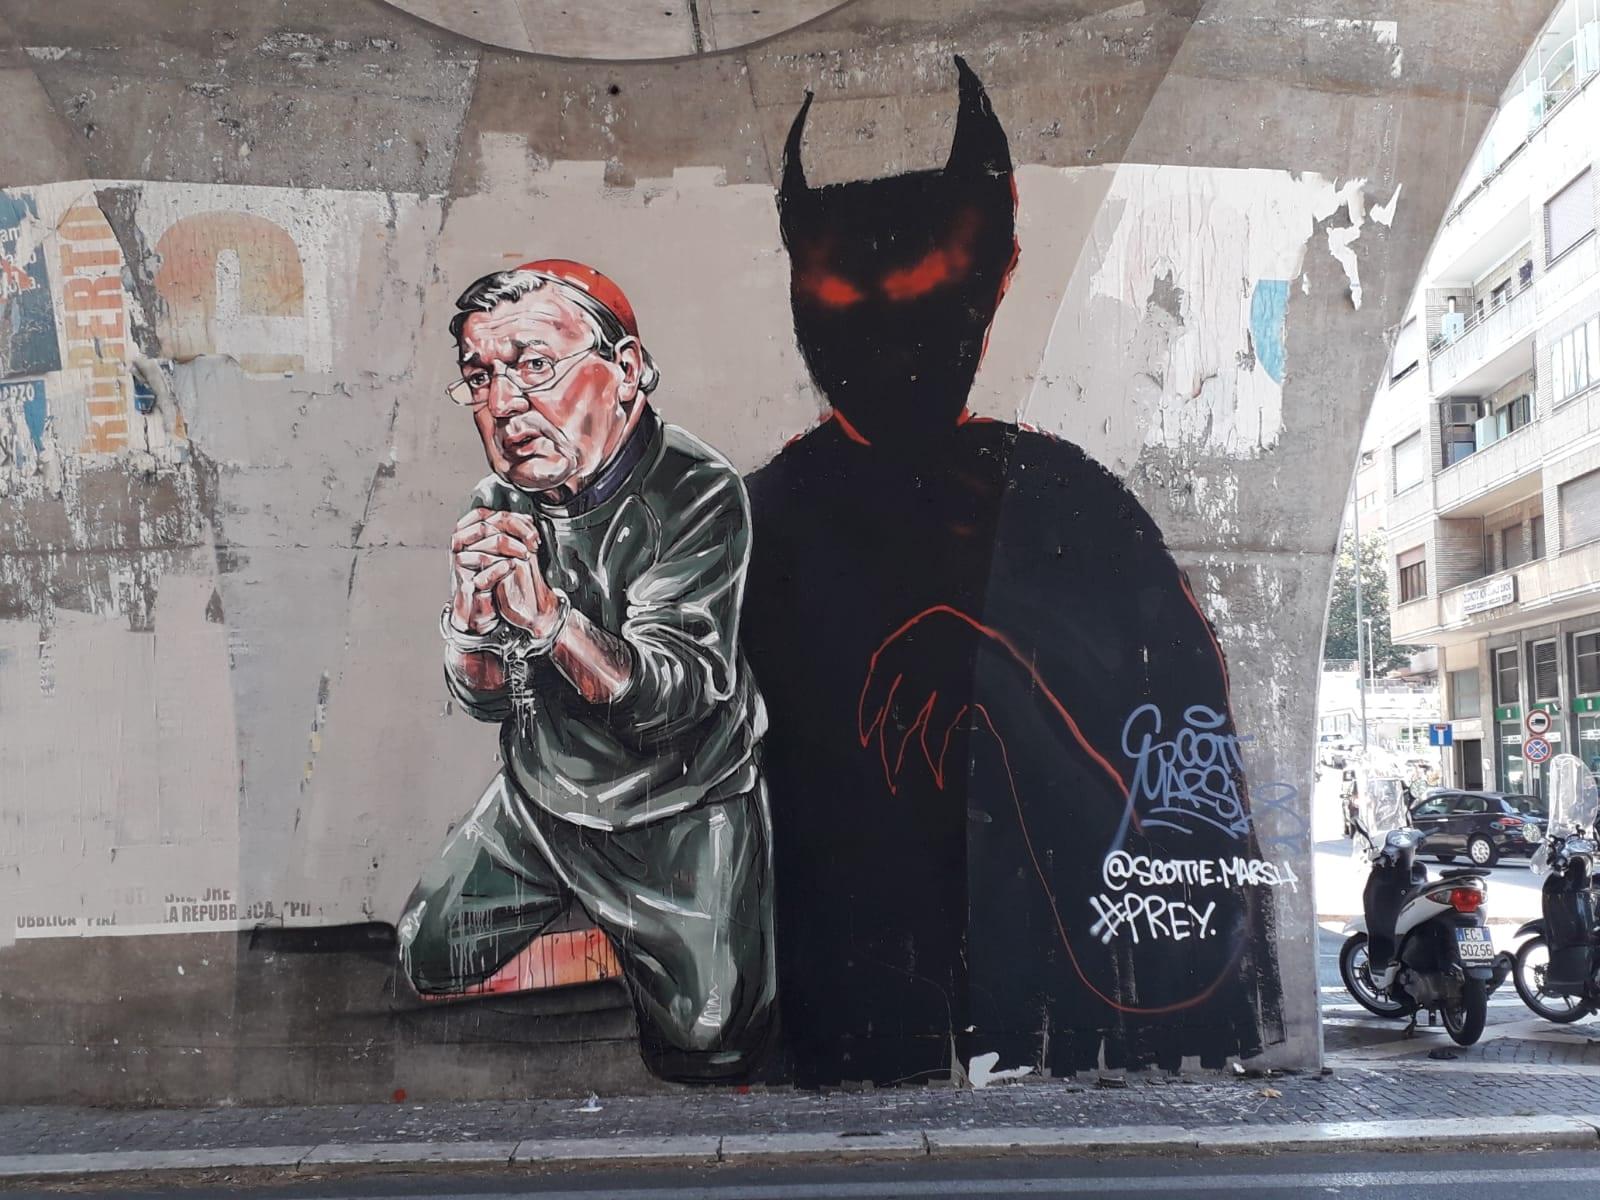 Mural depicting Cardinal Pell painted near Vatican